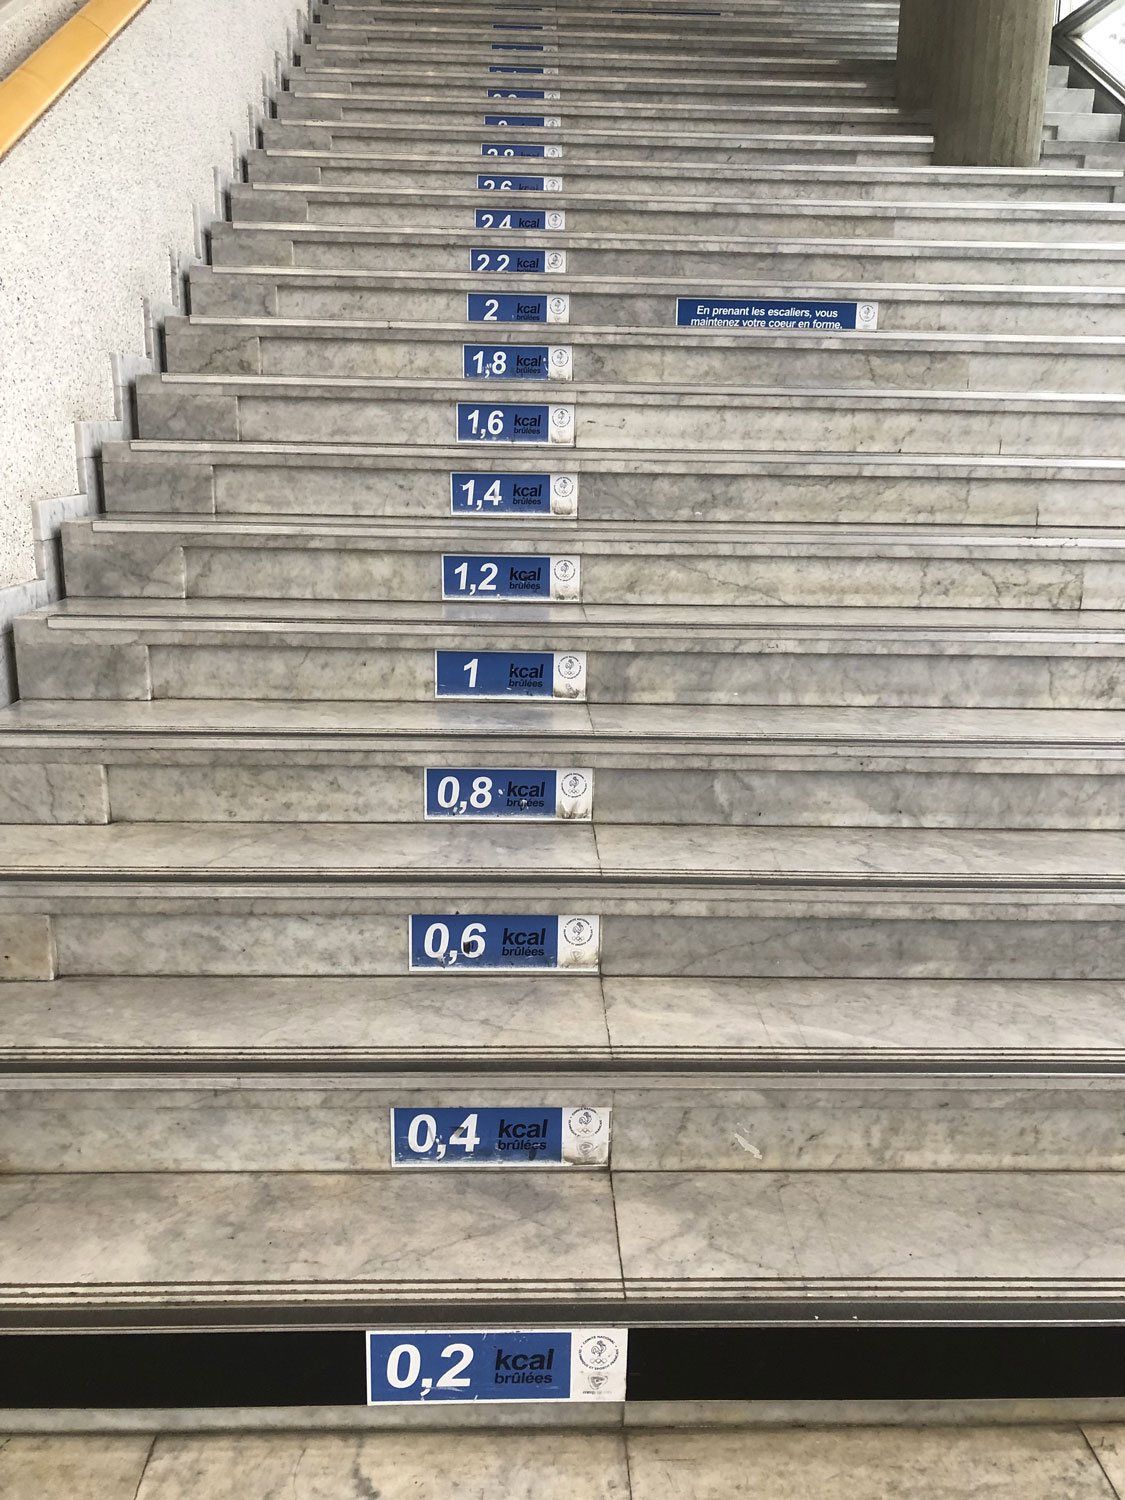 À monter les escaliers à pied, on perd 0,2 calorie à chaque marche. Au CNOSF pas besoin de compter les marches pour savoir combien vous avez perdu de calories, c’est écrit dessus ! © Globe Reporters